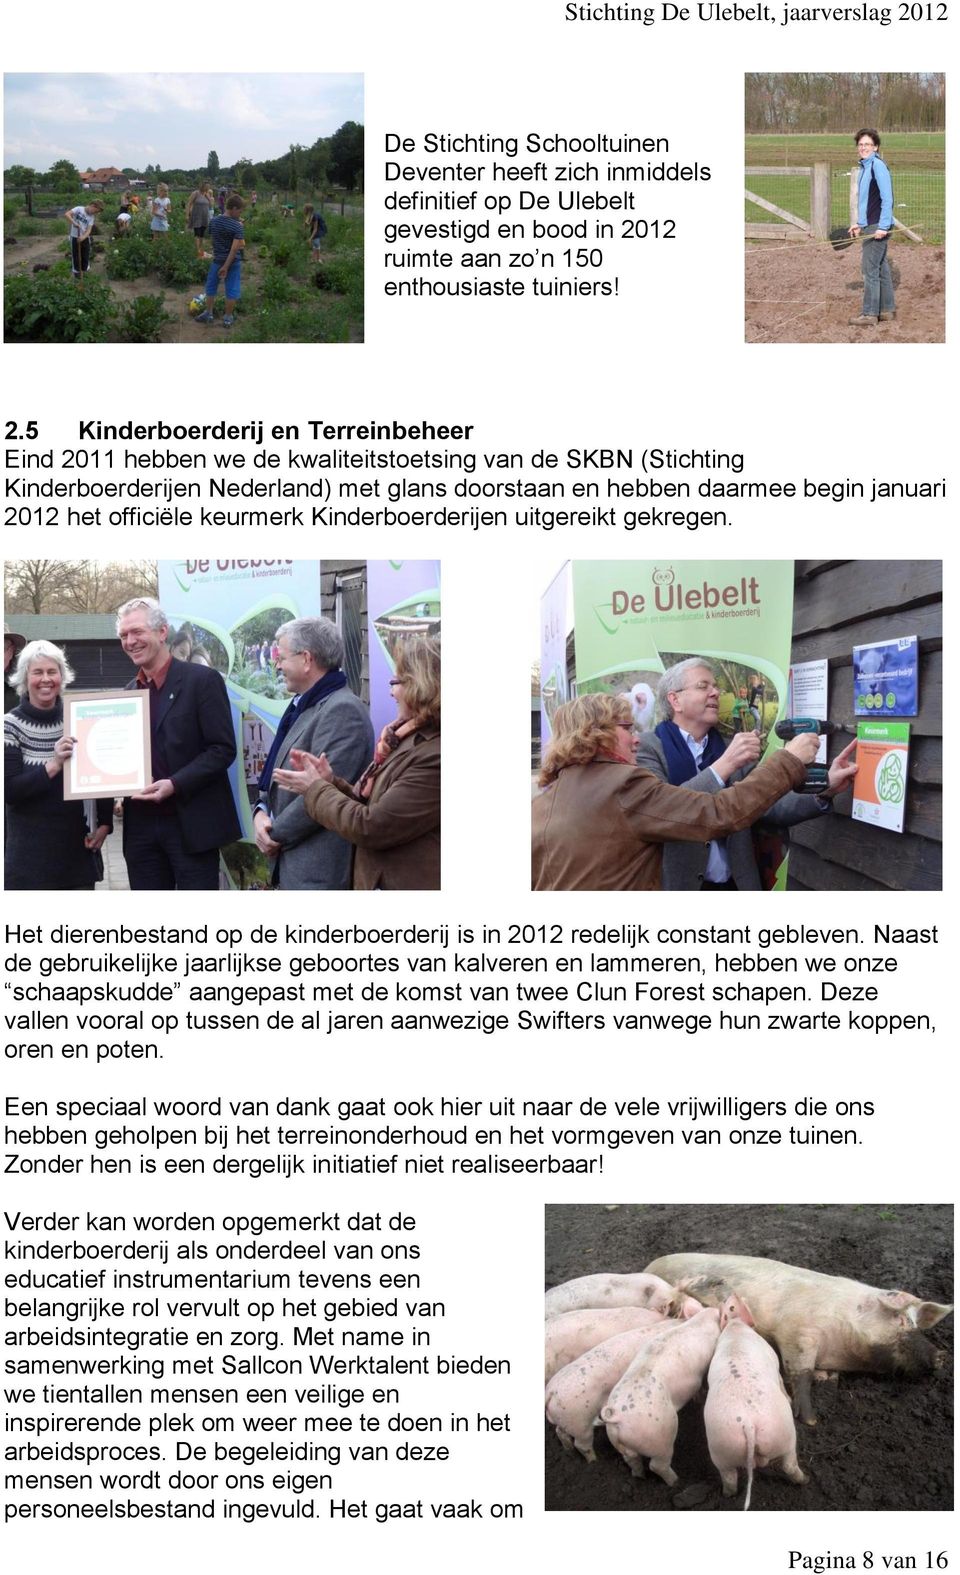 5 Kinderboerderij en Terreinbeheer Eind 2011 hebben we de kwaliteitstoetsing van de SKBN (Stichting Kinderboerderijen Nederland) met glans doorstaan en hebben daarmee begin januari 2012 het officiële